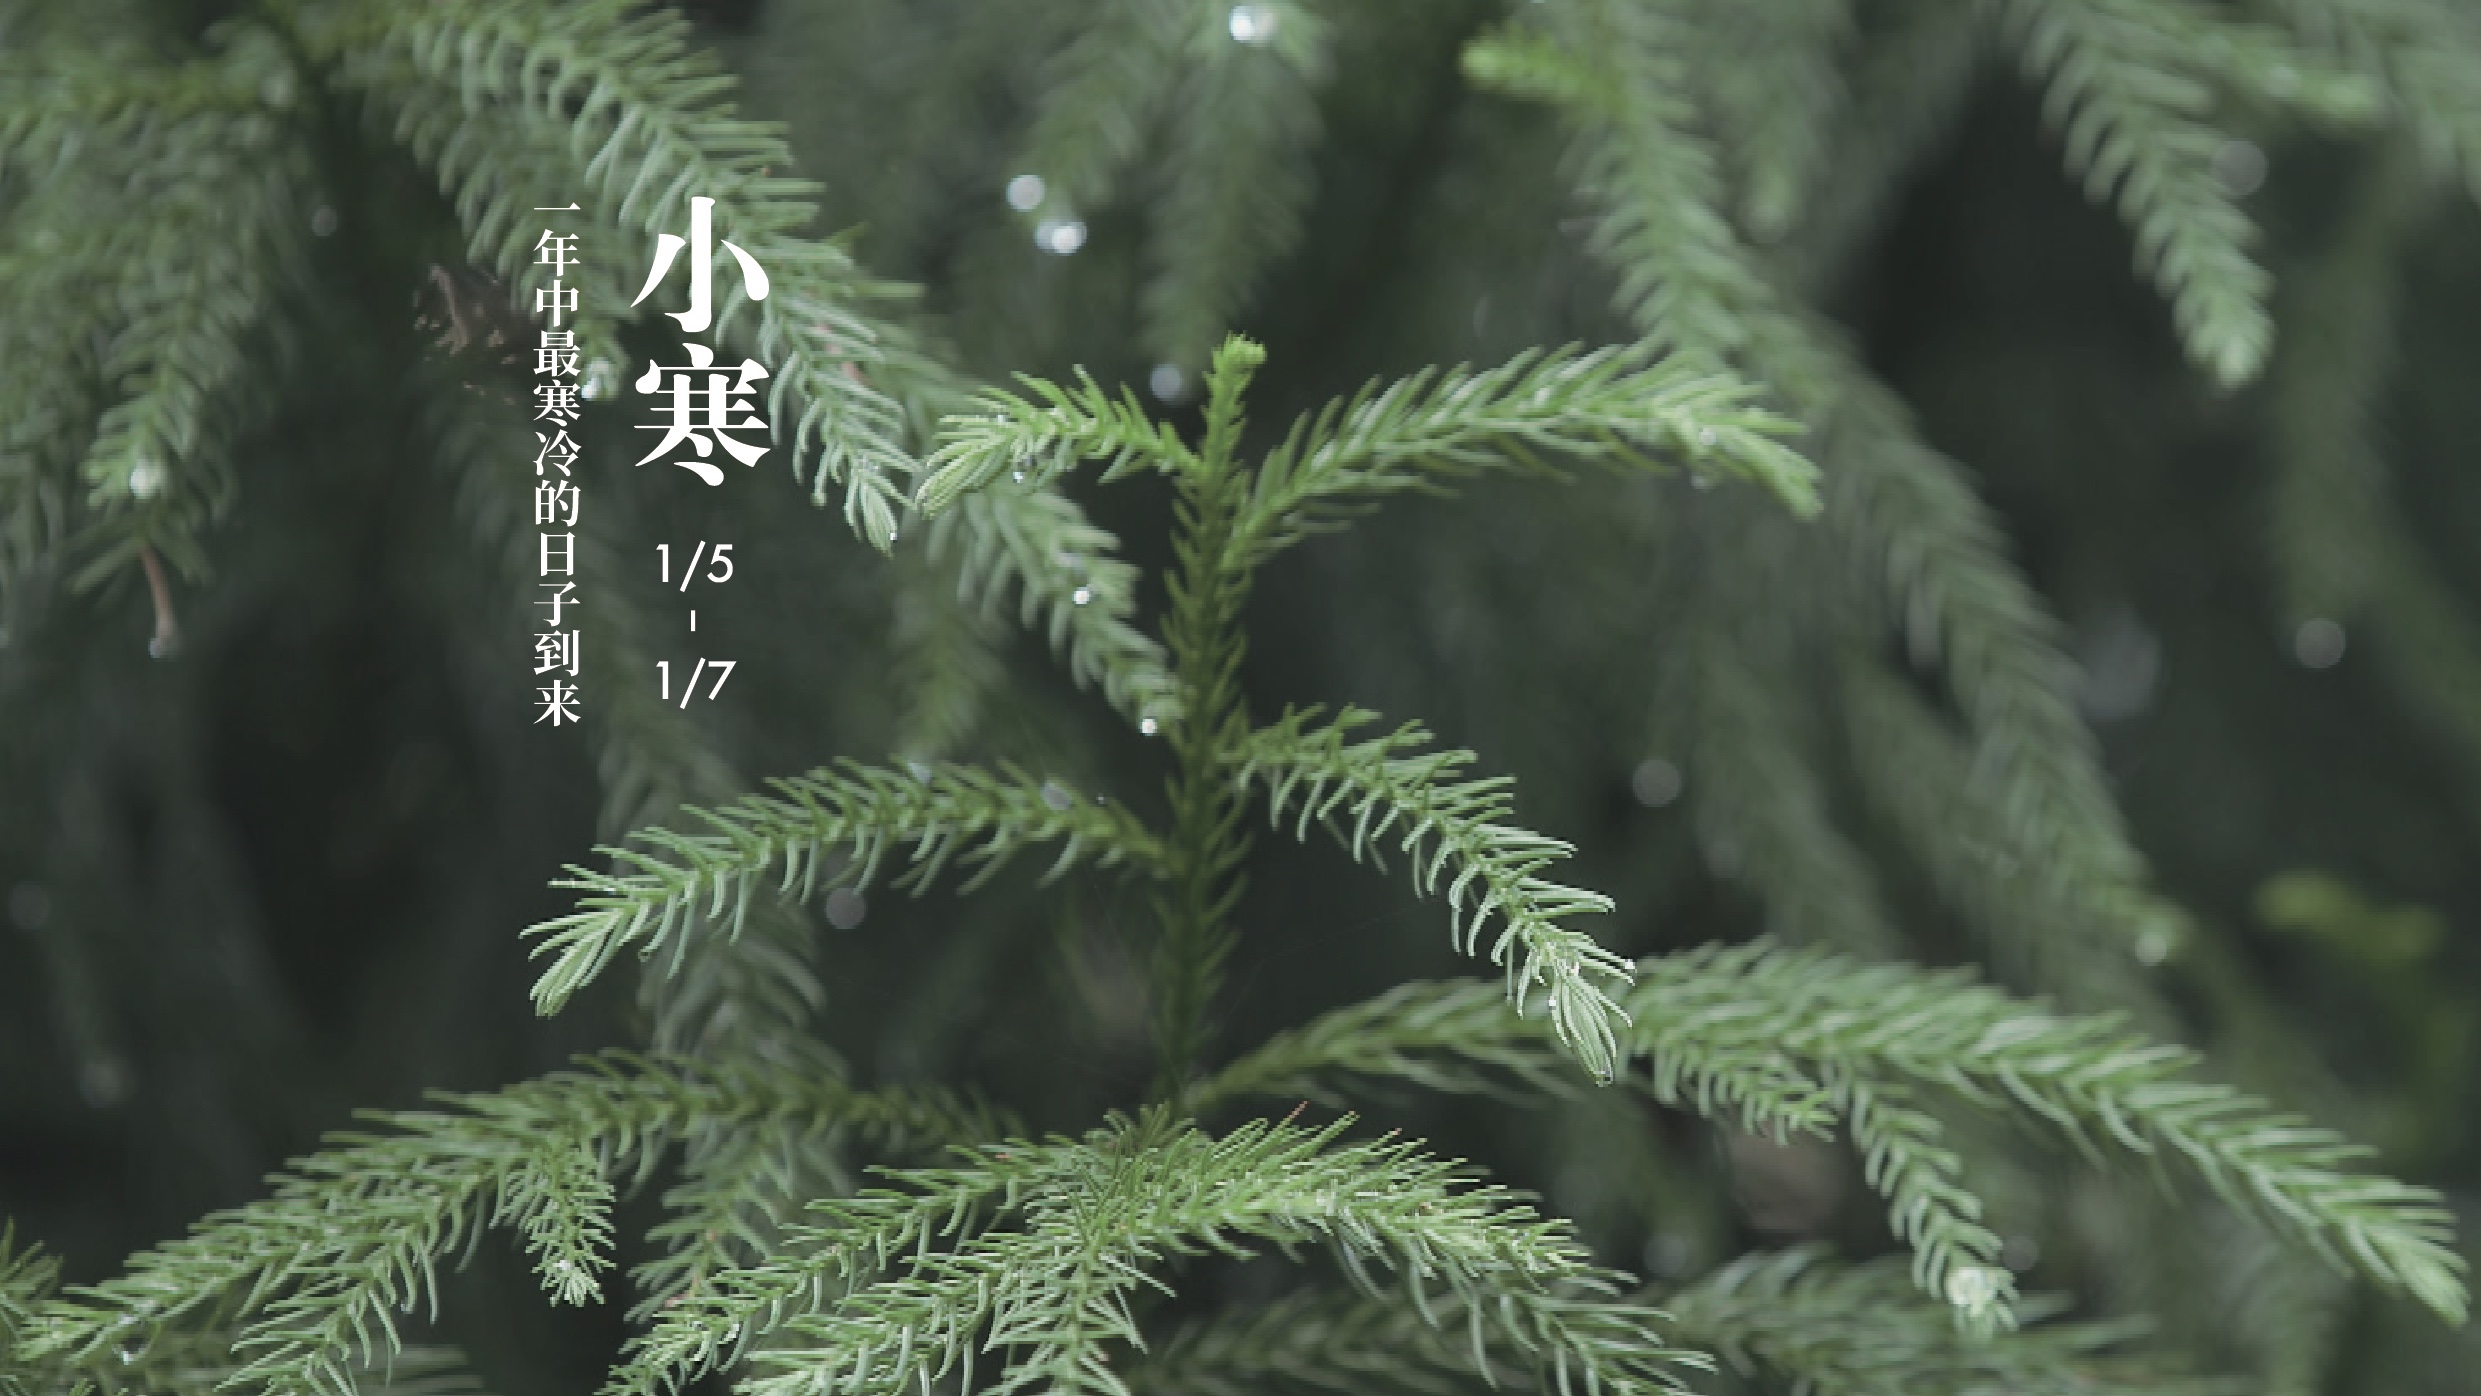 【纪录片】《四季中国》第二十三集《小寒》